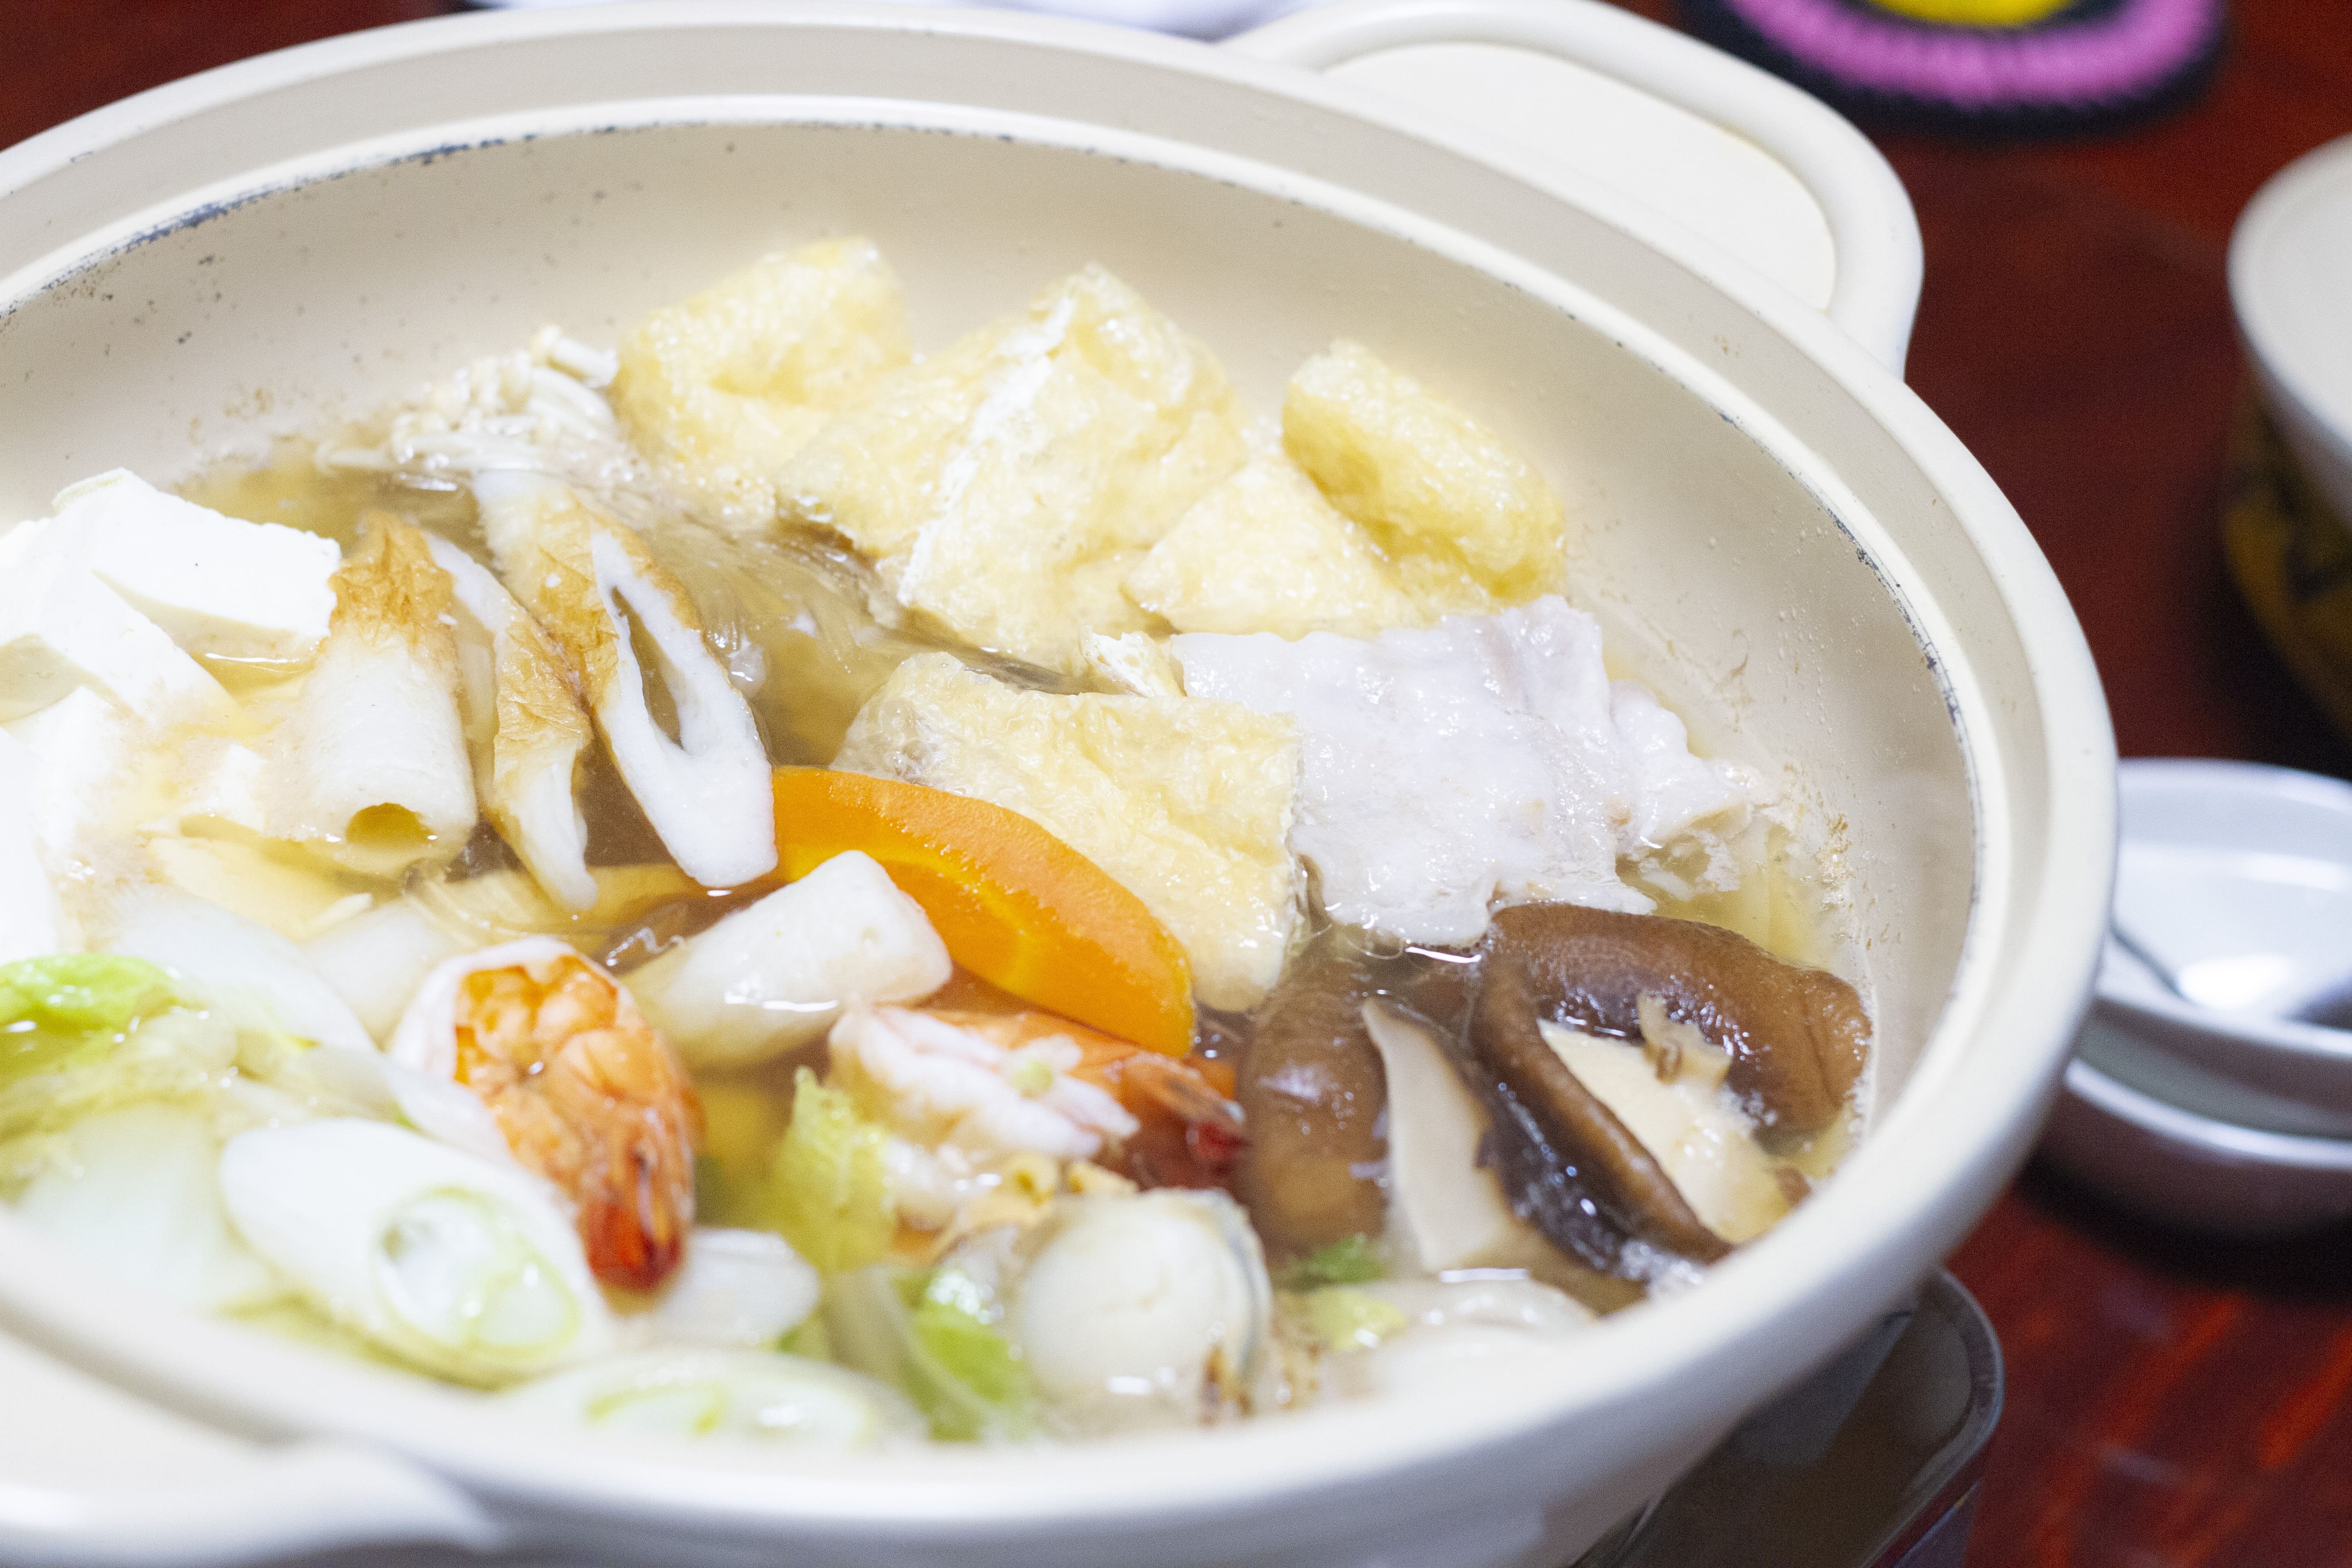 マルカツ生素麺の使用例(鍋の締めに生素麺)